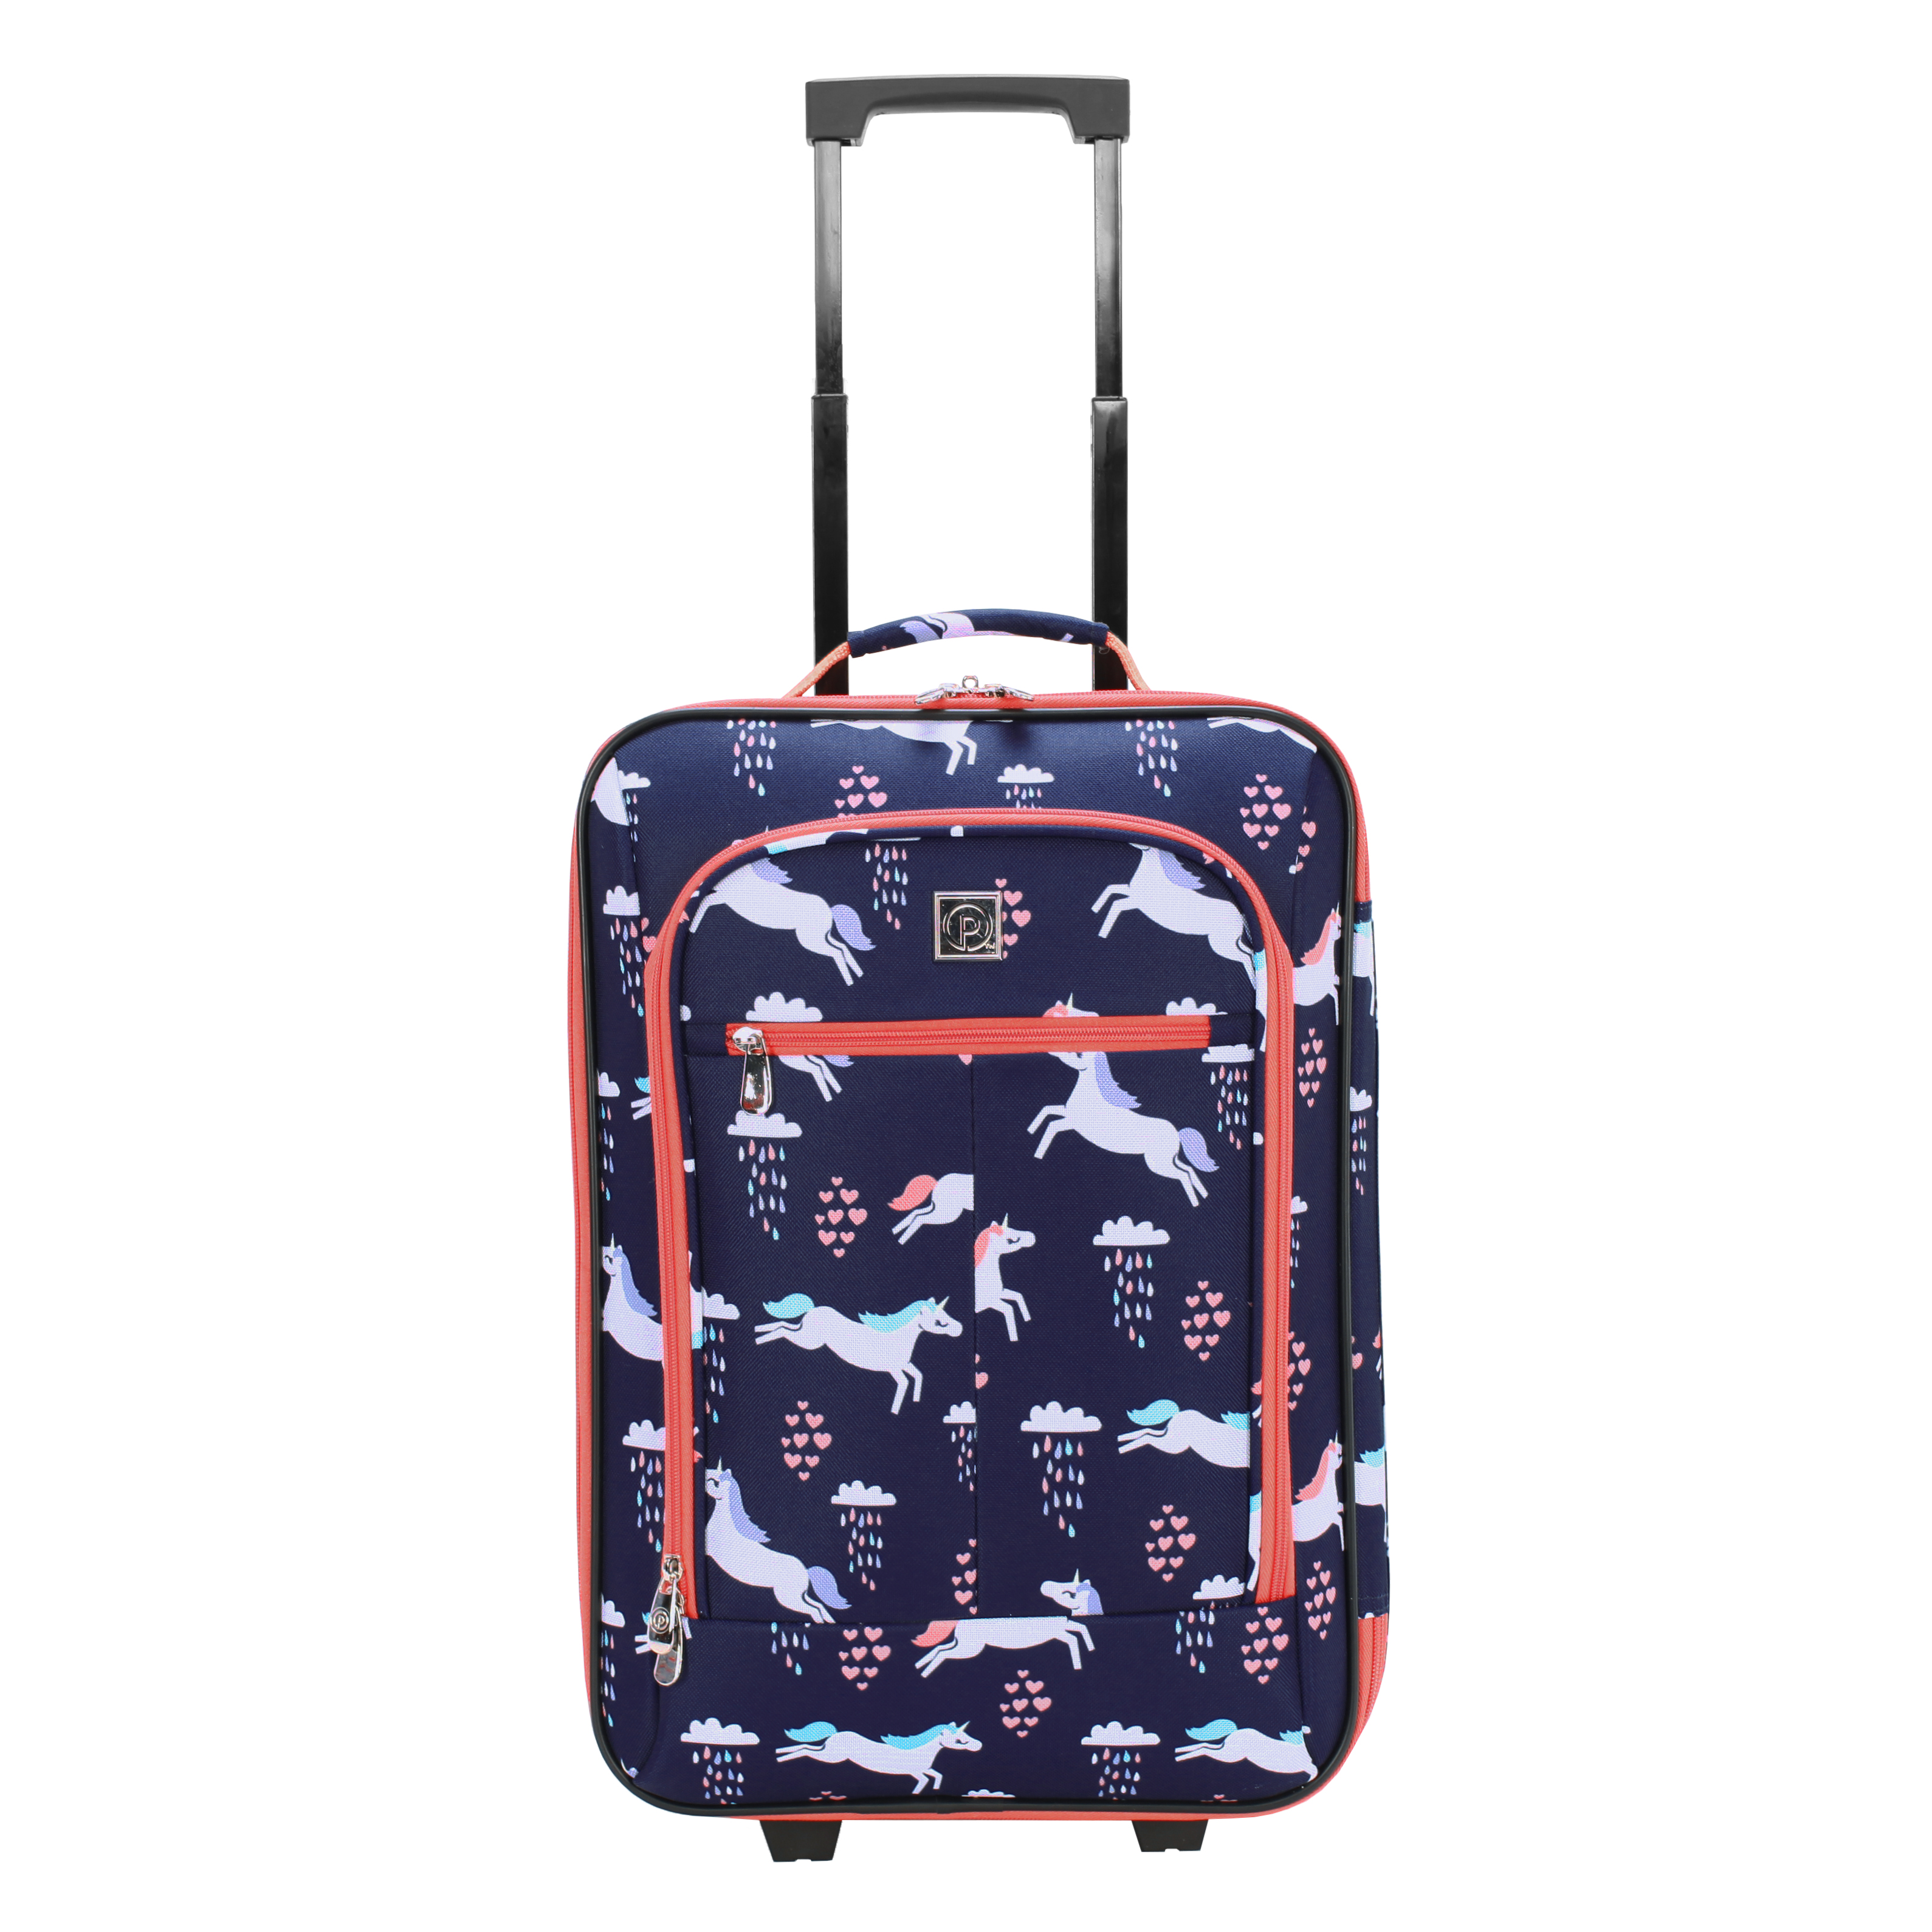 Protege 18" Kids Pilot Case Carry-on Luggage Suitcase, Unicorn - image 1 of 9